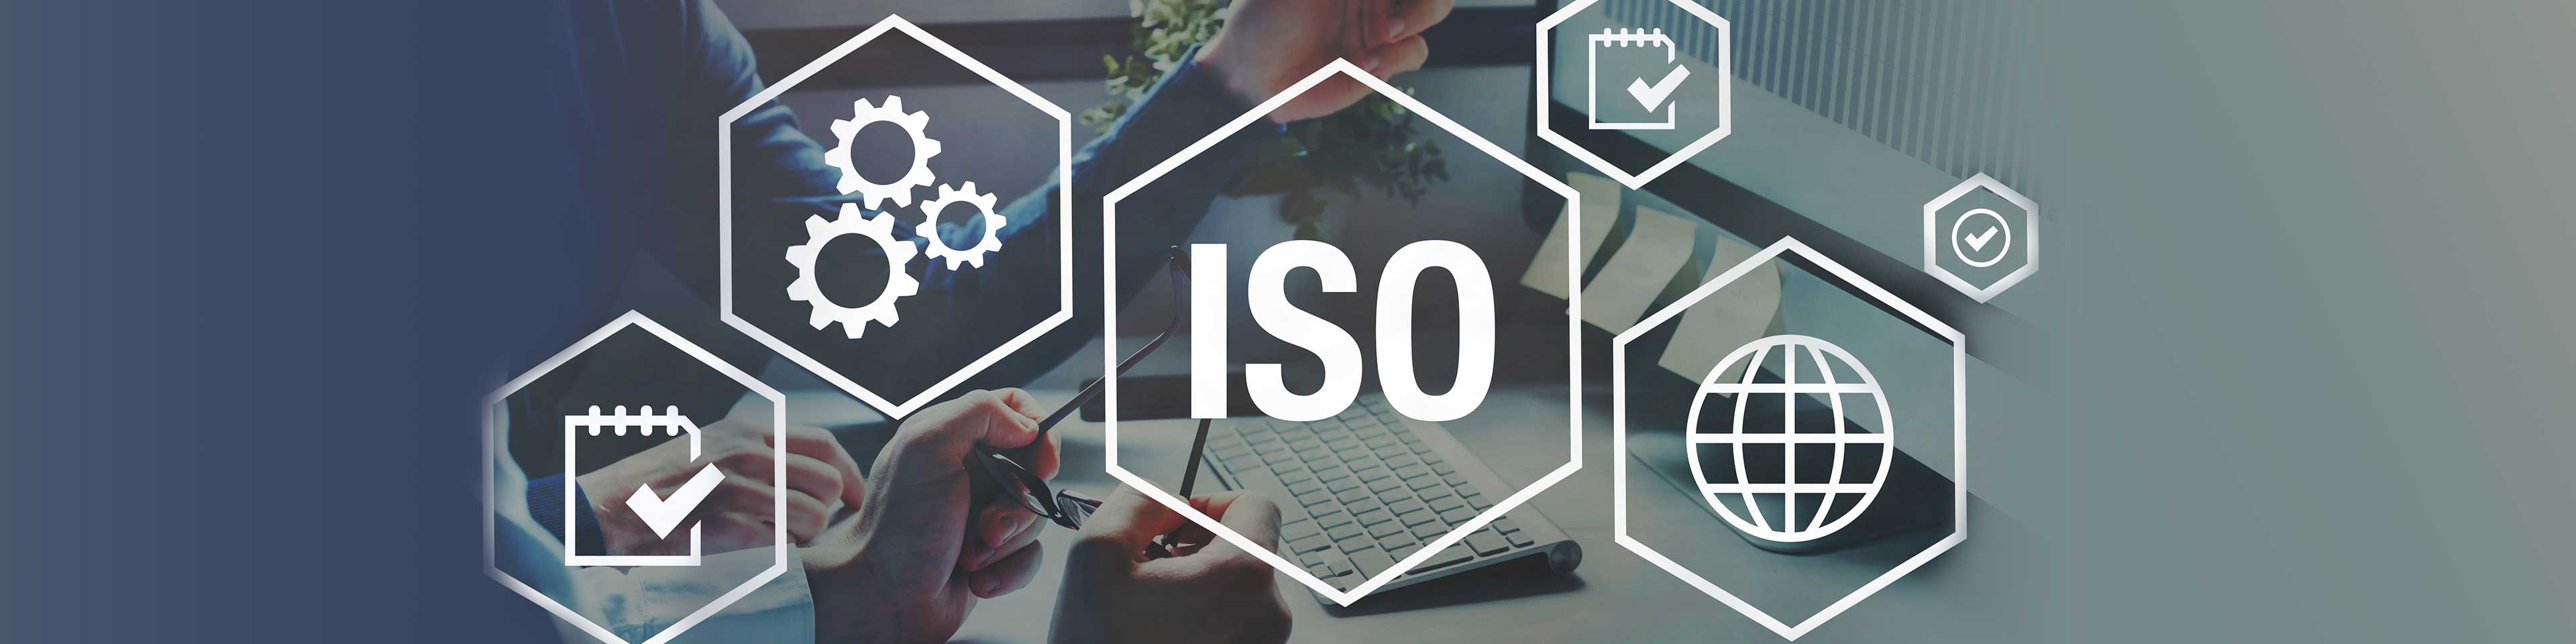  ISO 45001 invoeren: 10 tips om de meest voorkomende valkuilen te vermijden (infographic)